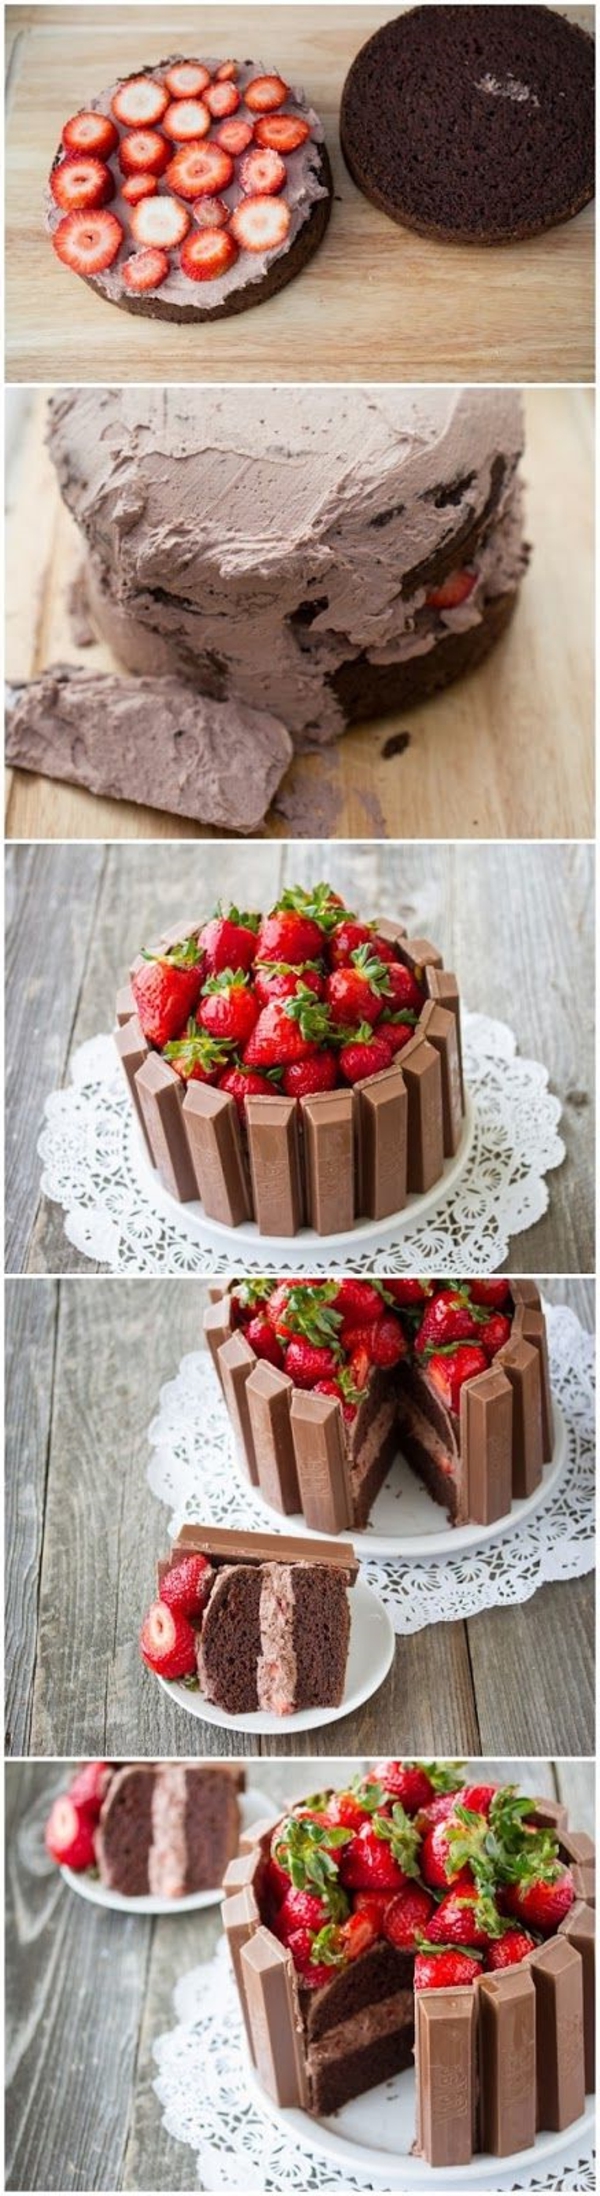 recette-gâteau-au-chocolat-comment-faire-kit-kat